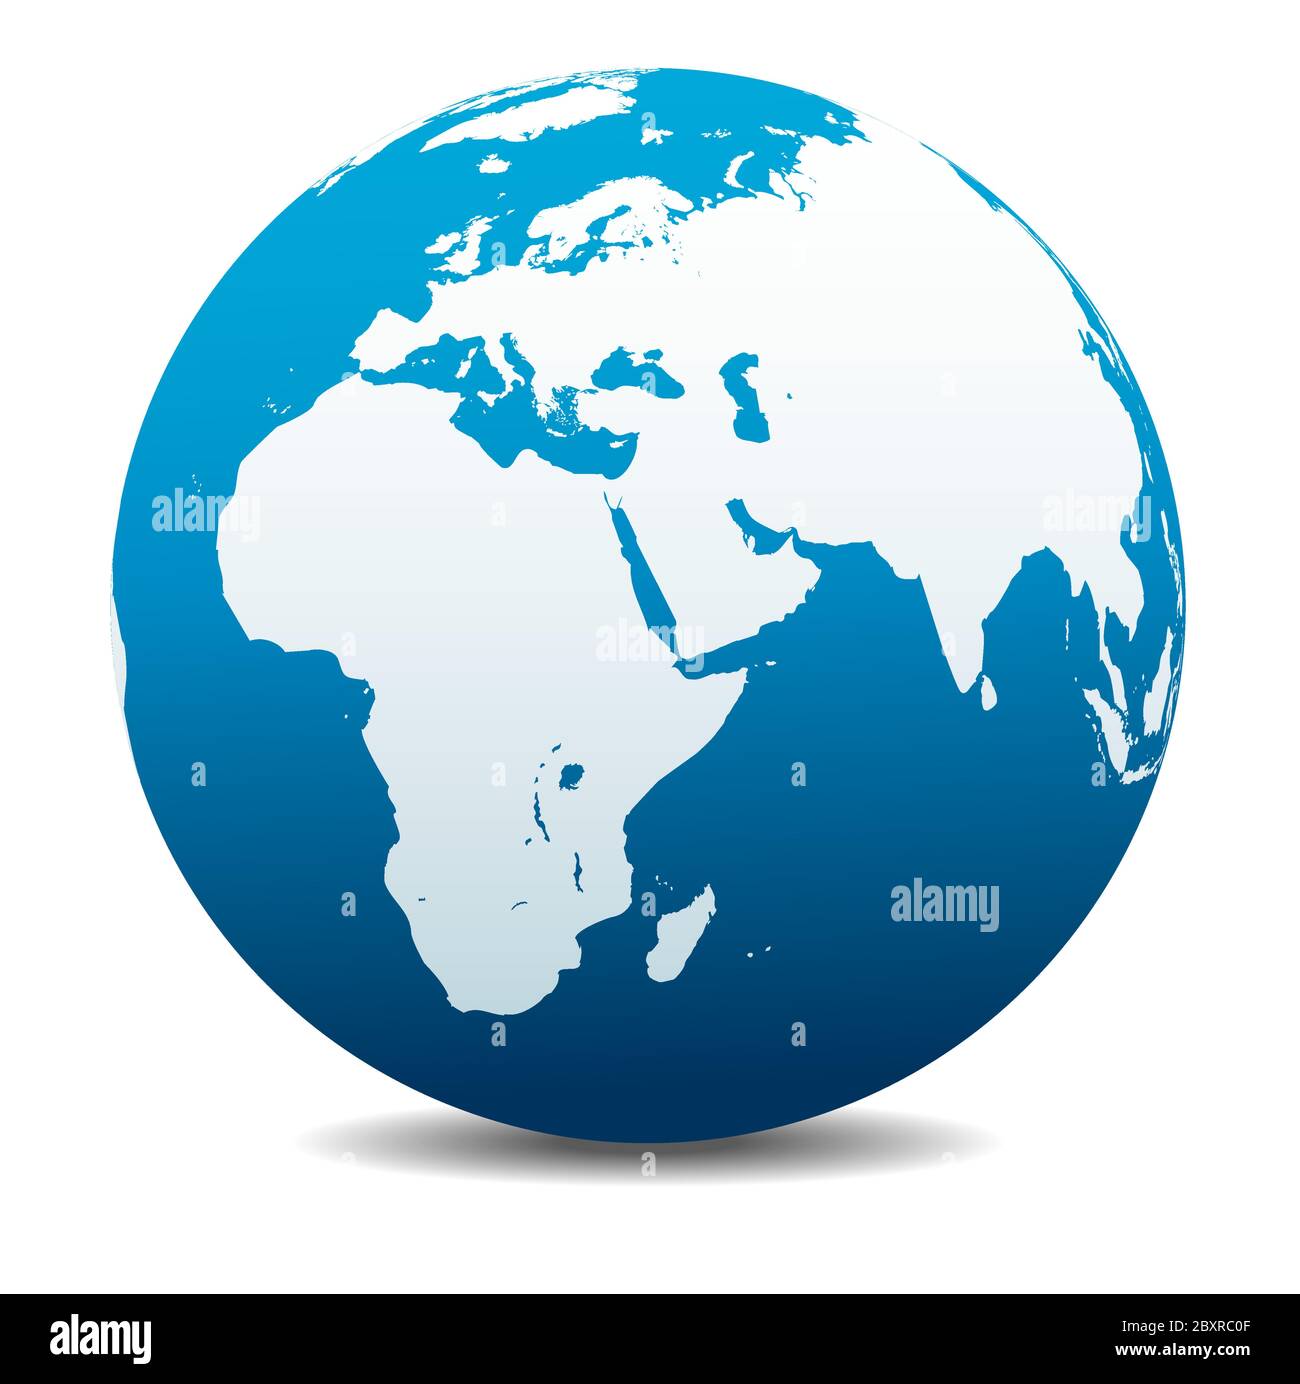 Afrika, Naher Osten, Arabien und Indien. Vektorkarte Symbol des Globus, Erde. Alle Elemente befinden sich auf einzelnen Ebenen in der Vektordatei. Stock Vektor